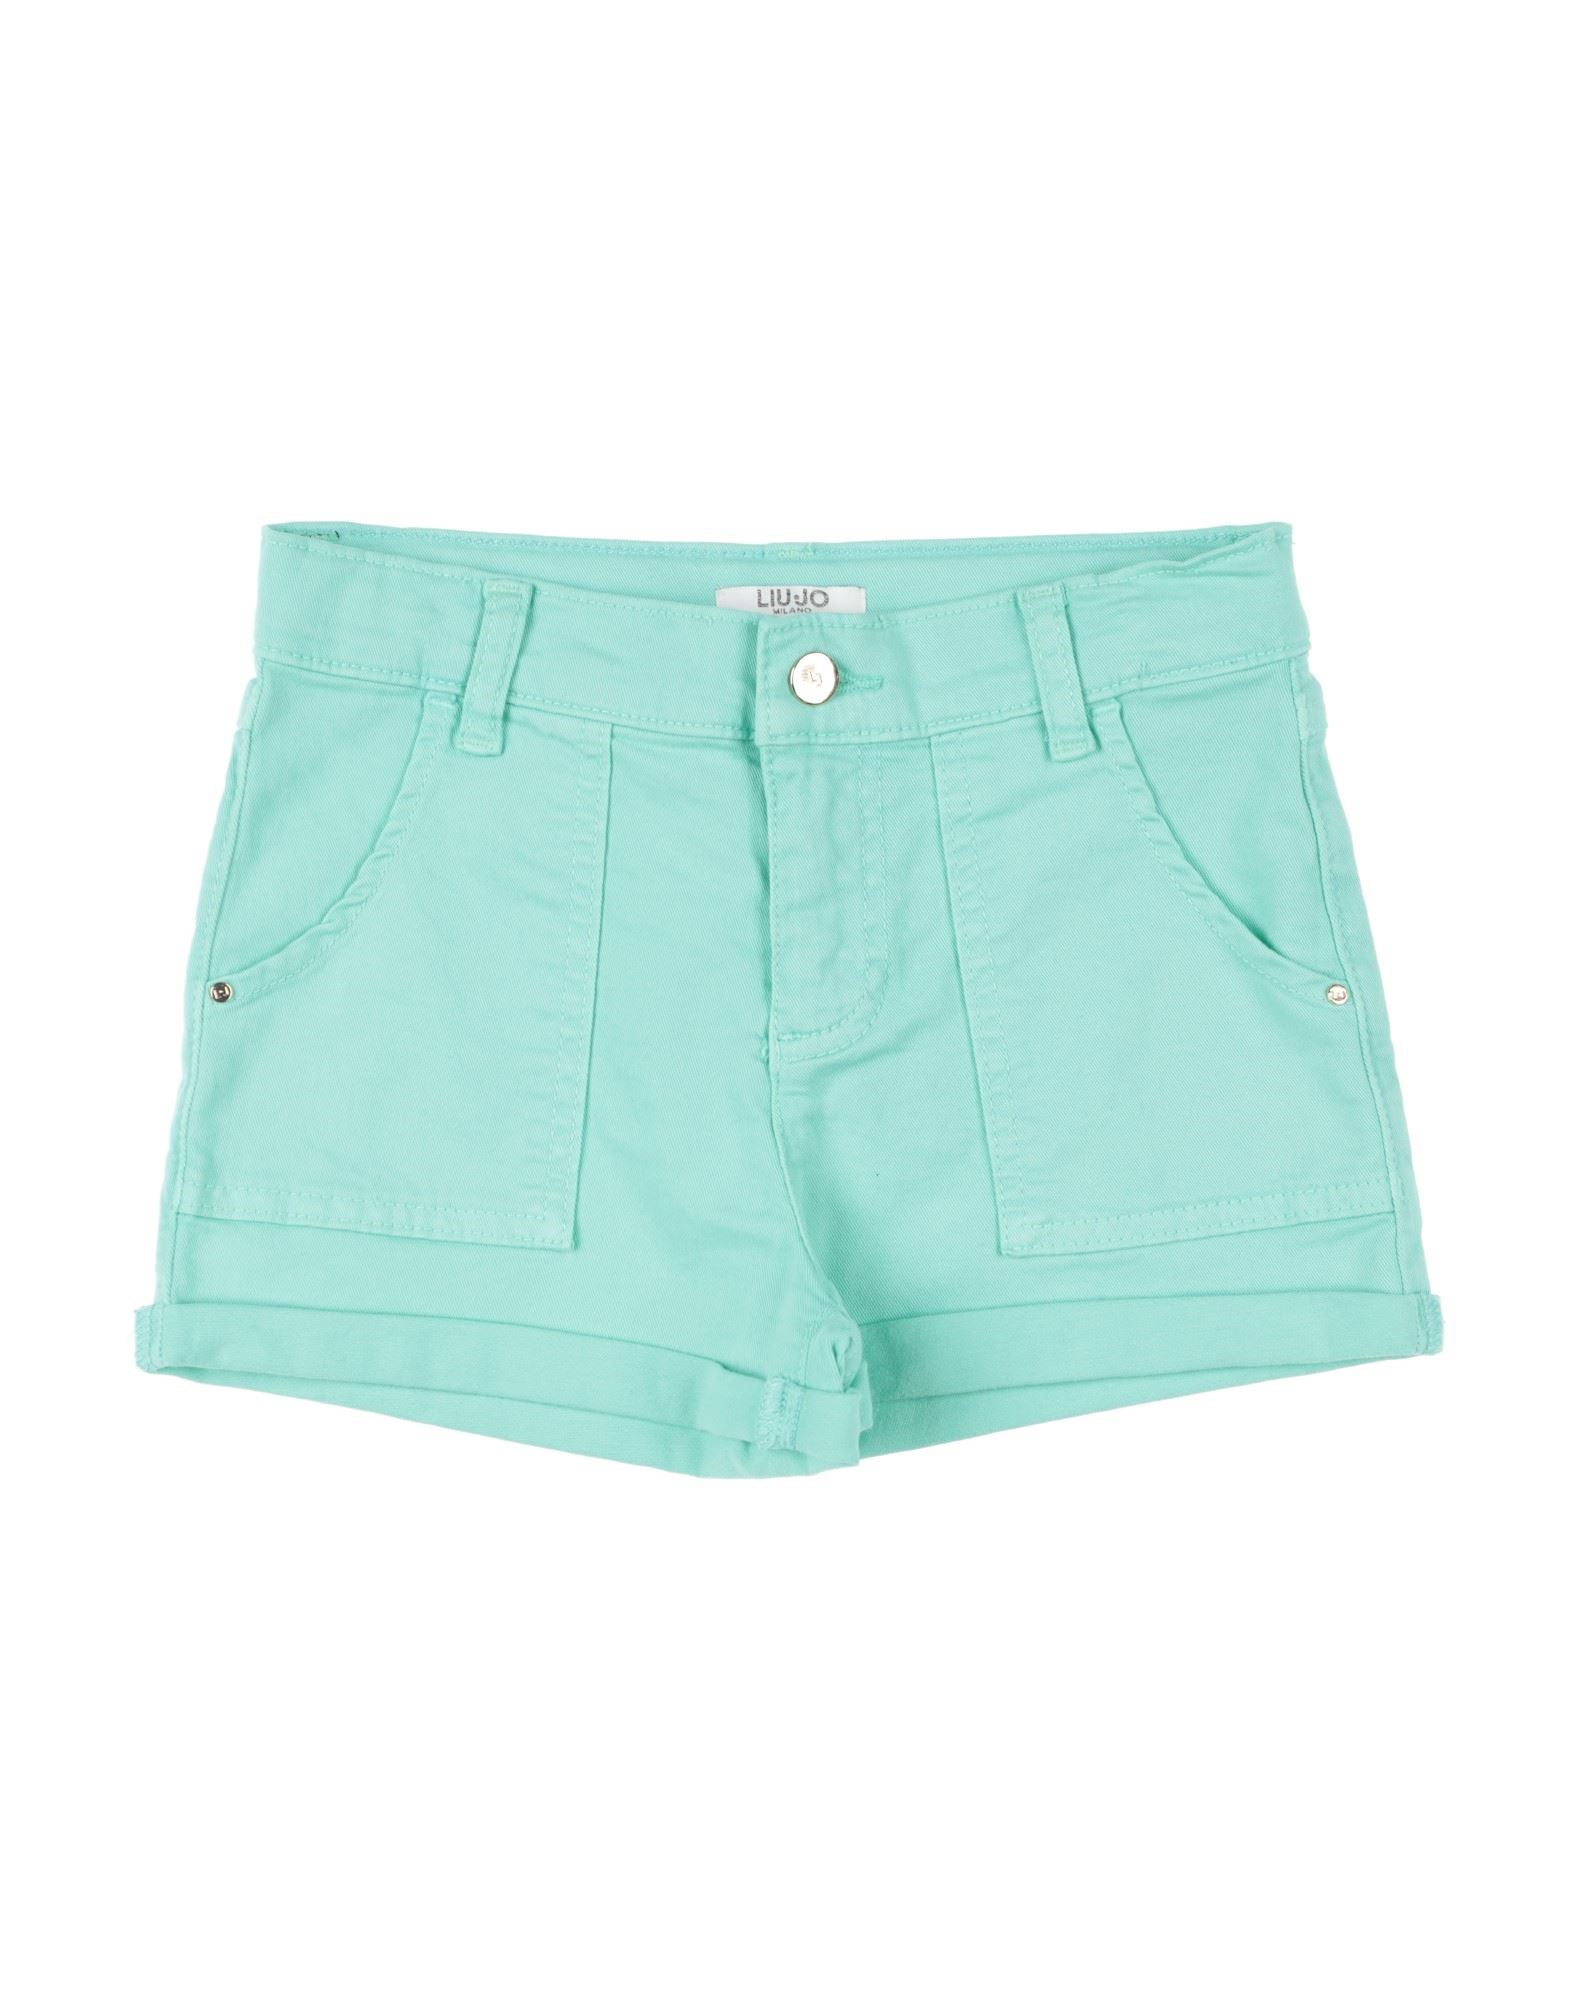 Liu •jo Kids'  Toddler Girl Shorts & Bermuda Shorts Turquoise Size 5 Cotton, Elastane In Blue